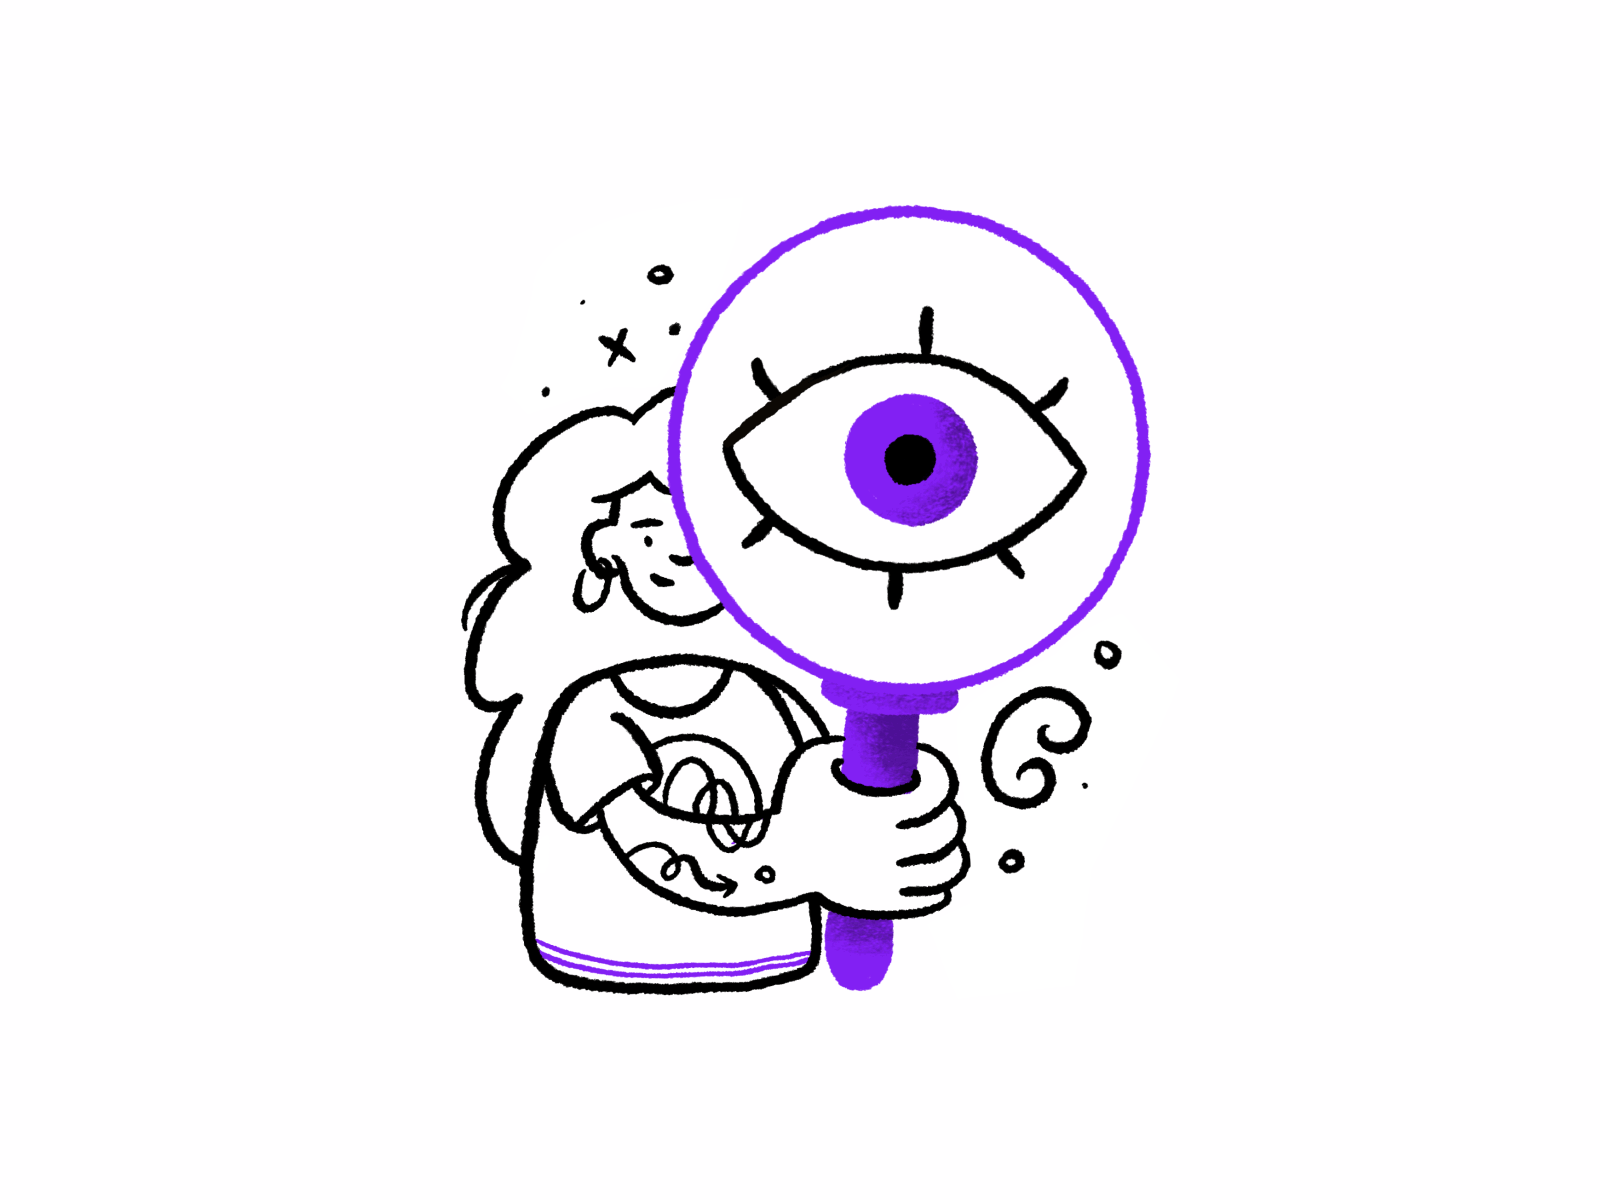 Gif de uma ilustração de uma mulher tatuada segurando uma lupa gigante. O olho pisca quando ela mexe o braço.